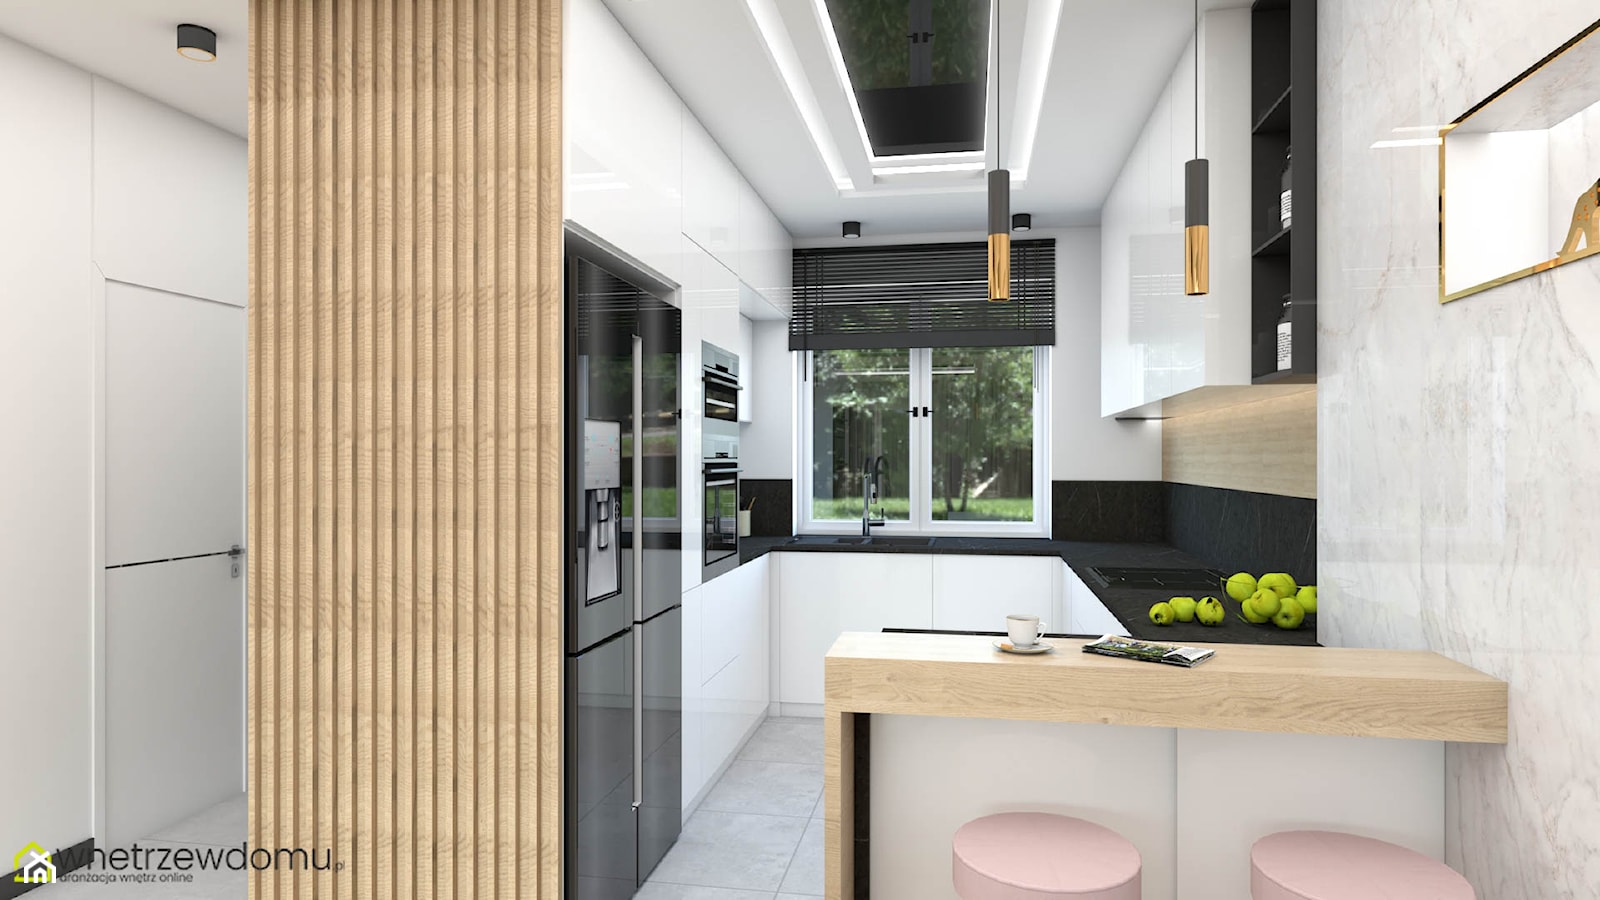 Połączenie cegły i kamienia w salonie z kuchnią - zdjęcie od wnetrzewdomu - Homebook